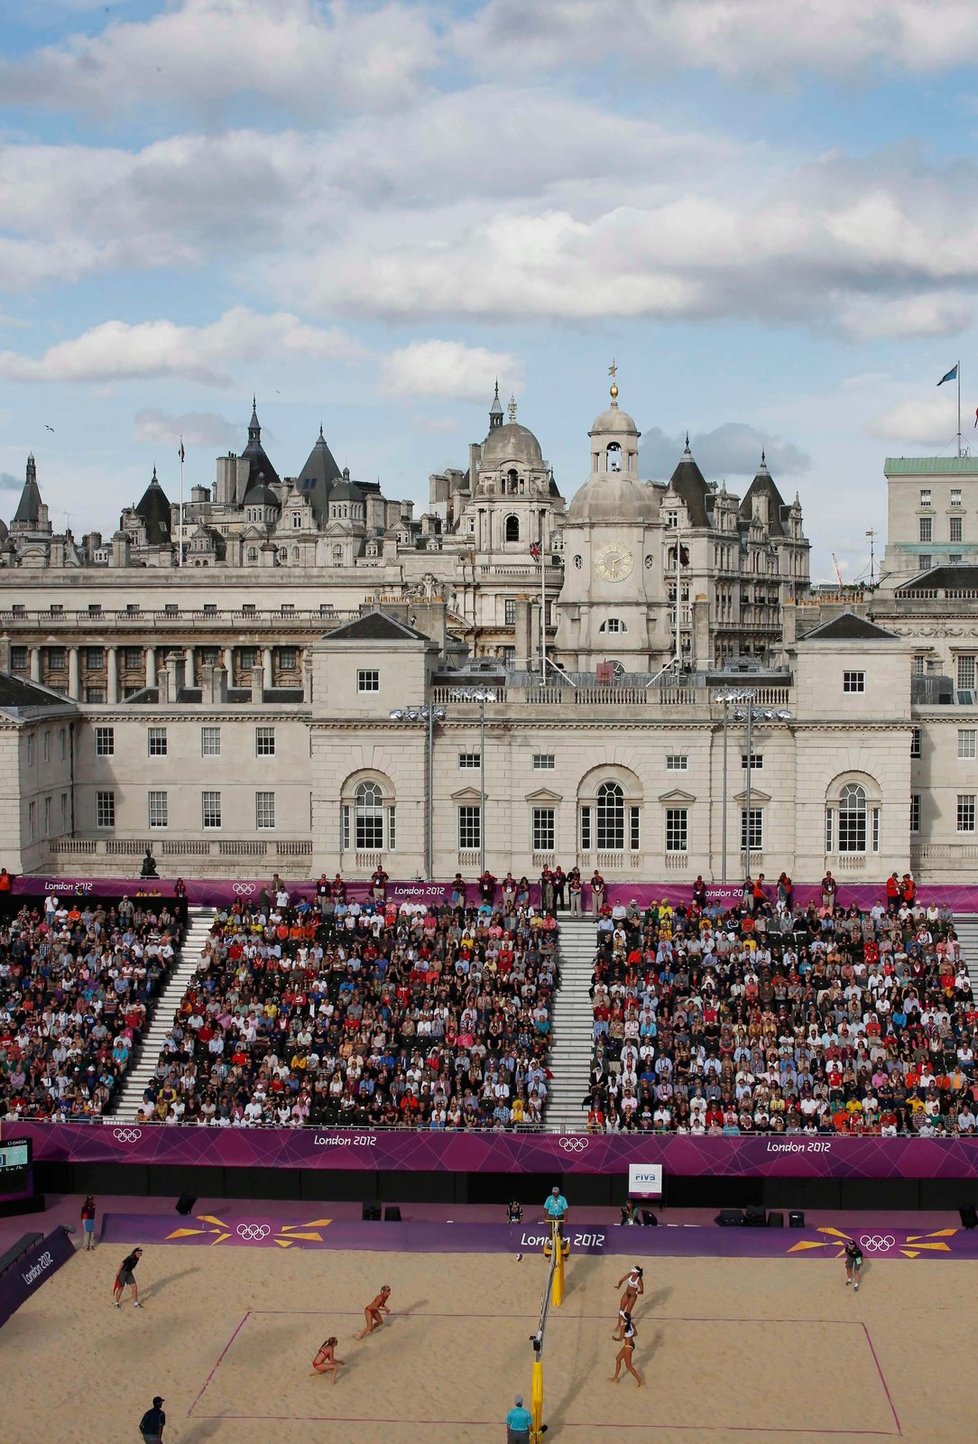 Žádosti u ruku nadšeně aplaudovaly zaplněné ochozy londýského olympijského stánku